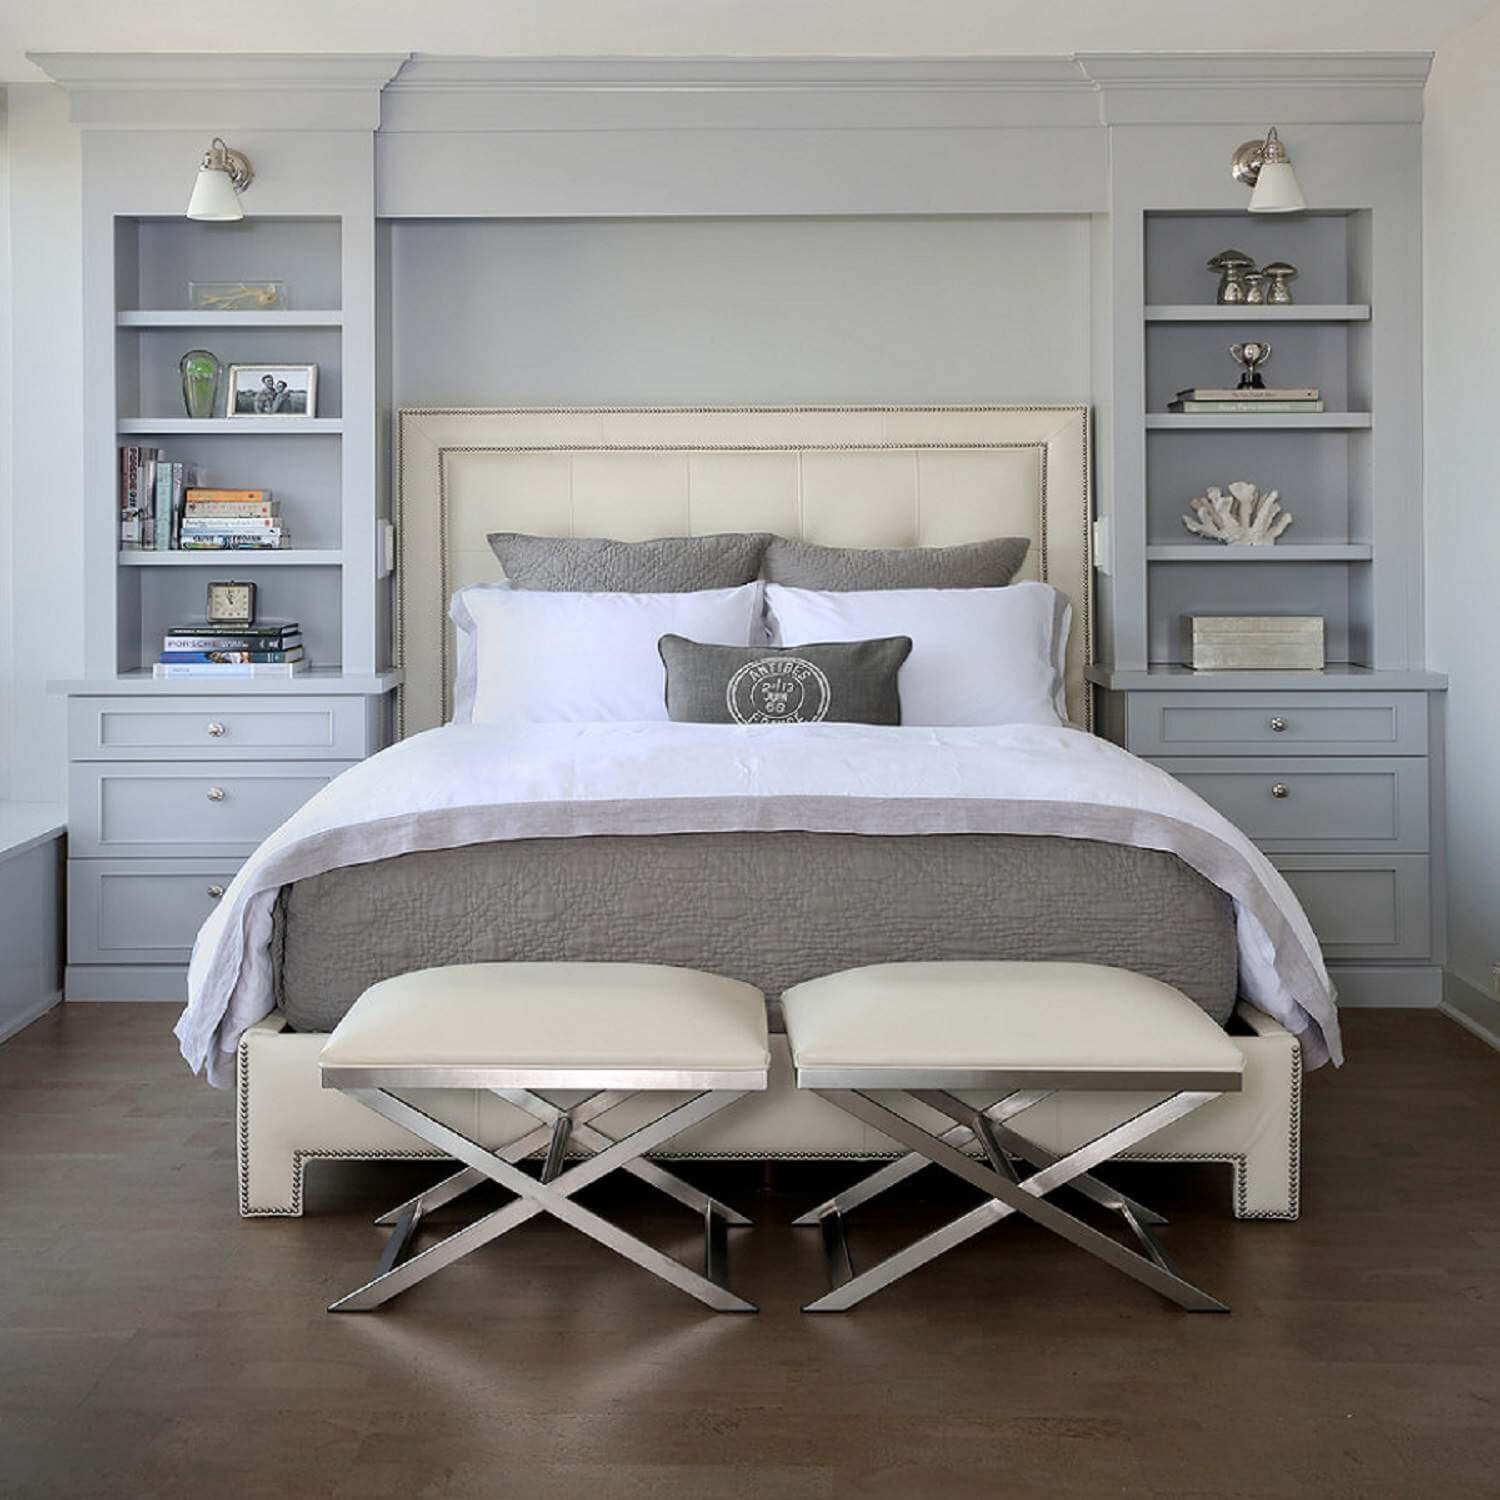 Quiet minimalist bedroom